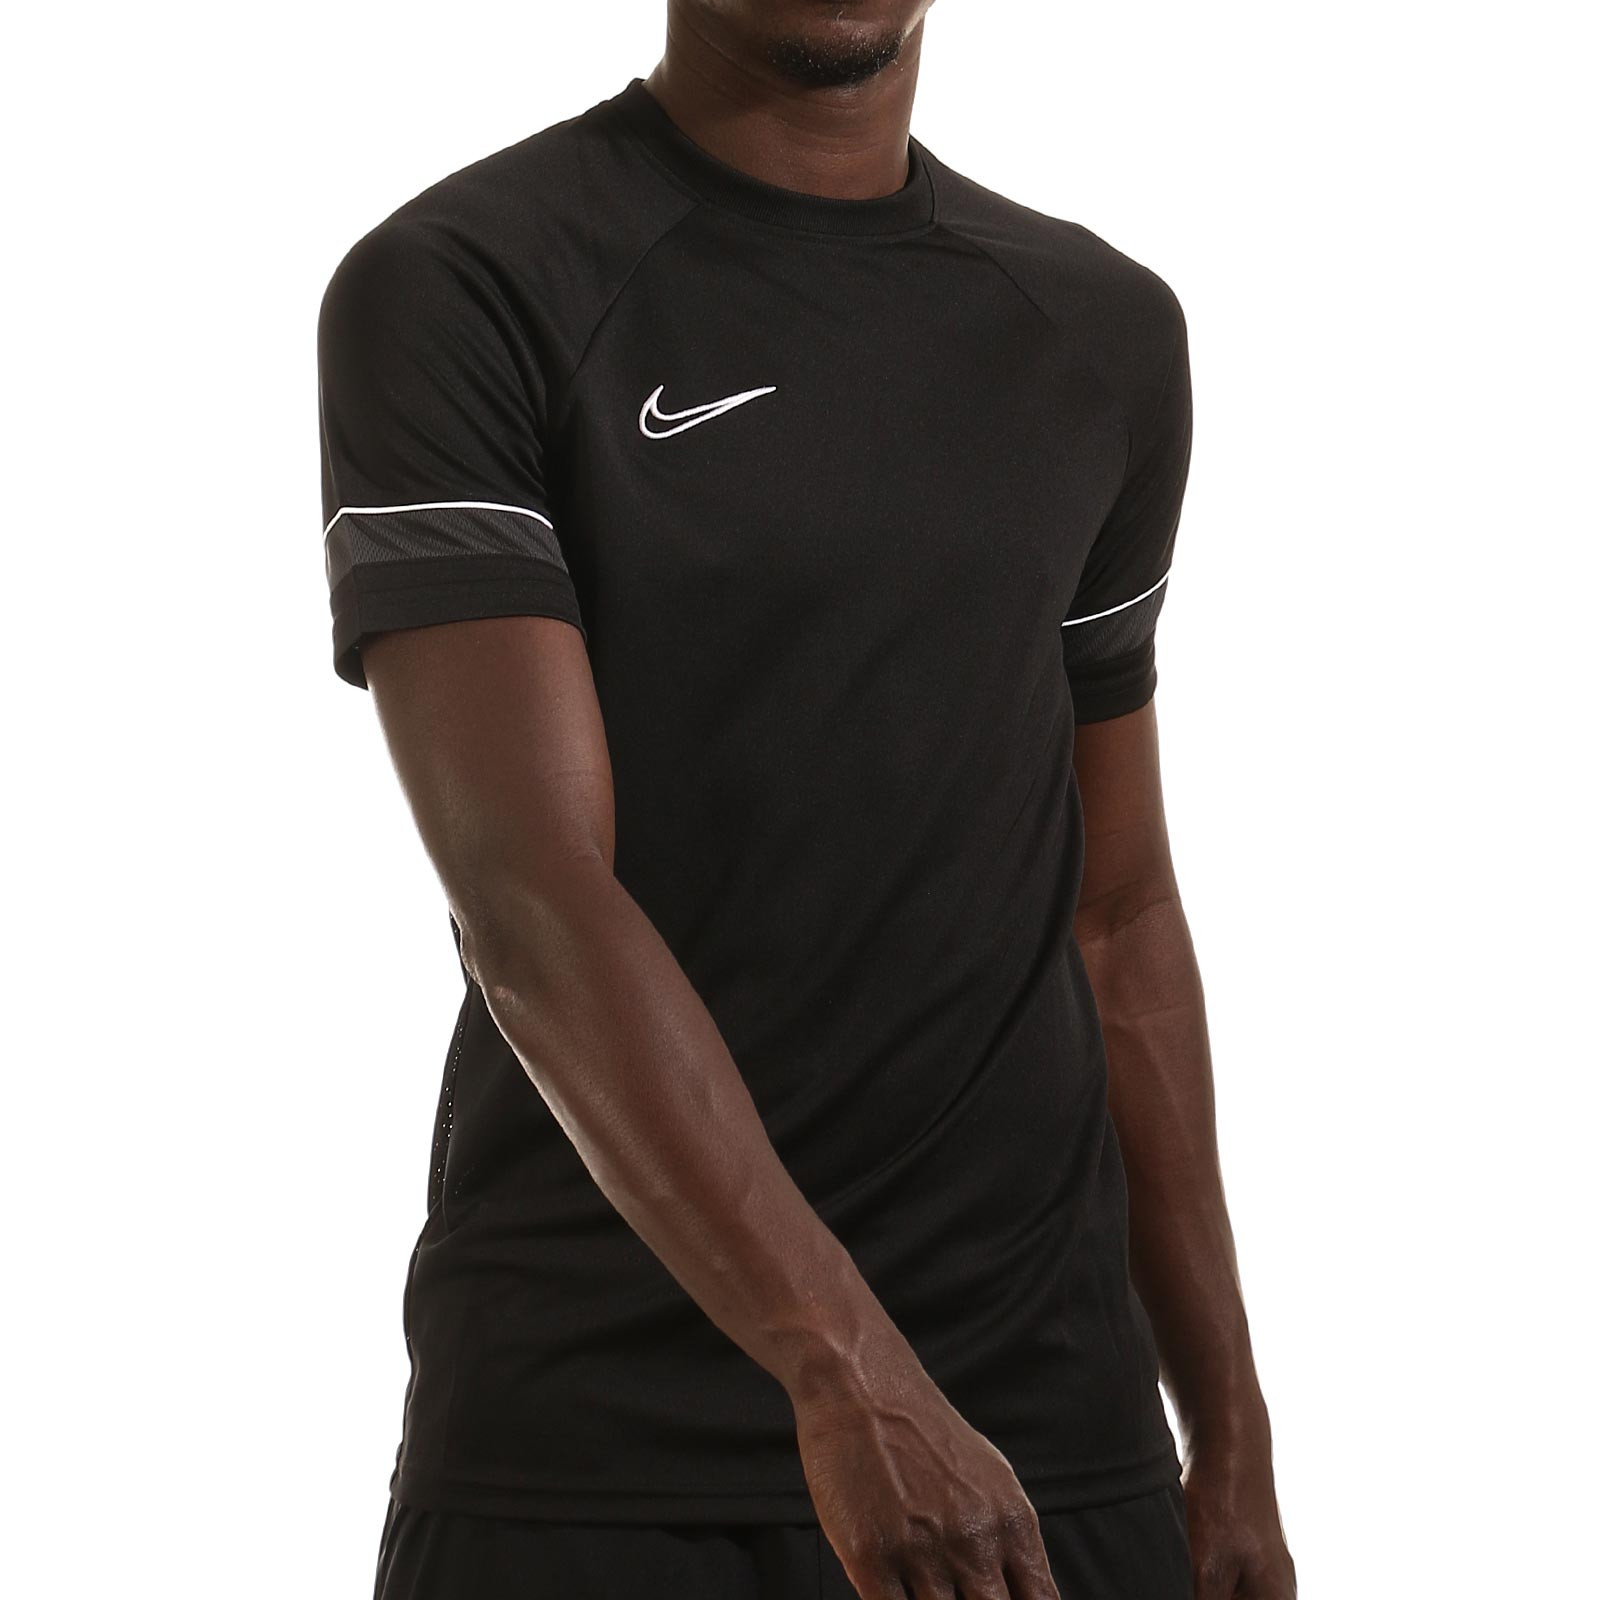 Excuse me Shelling Gate Camiseta Nike Dri-Fit Academy 21 negra | futbolmania